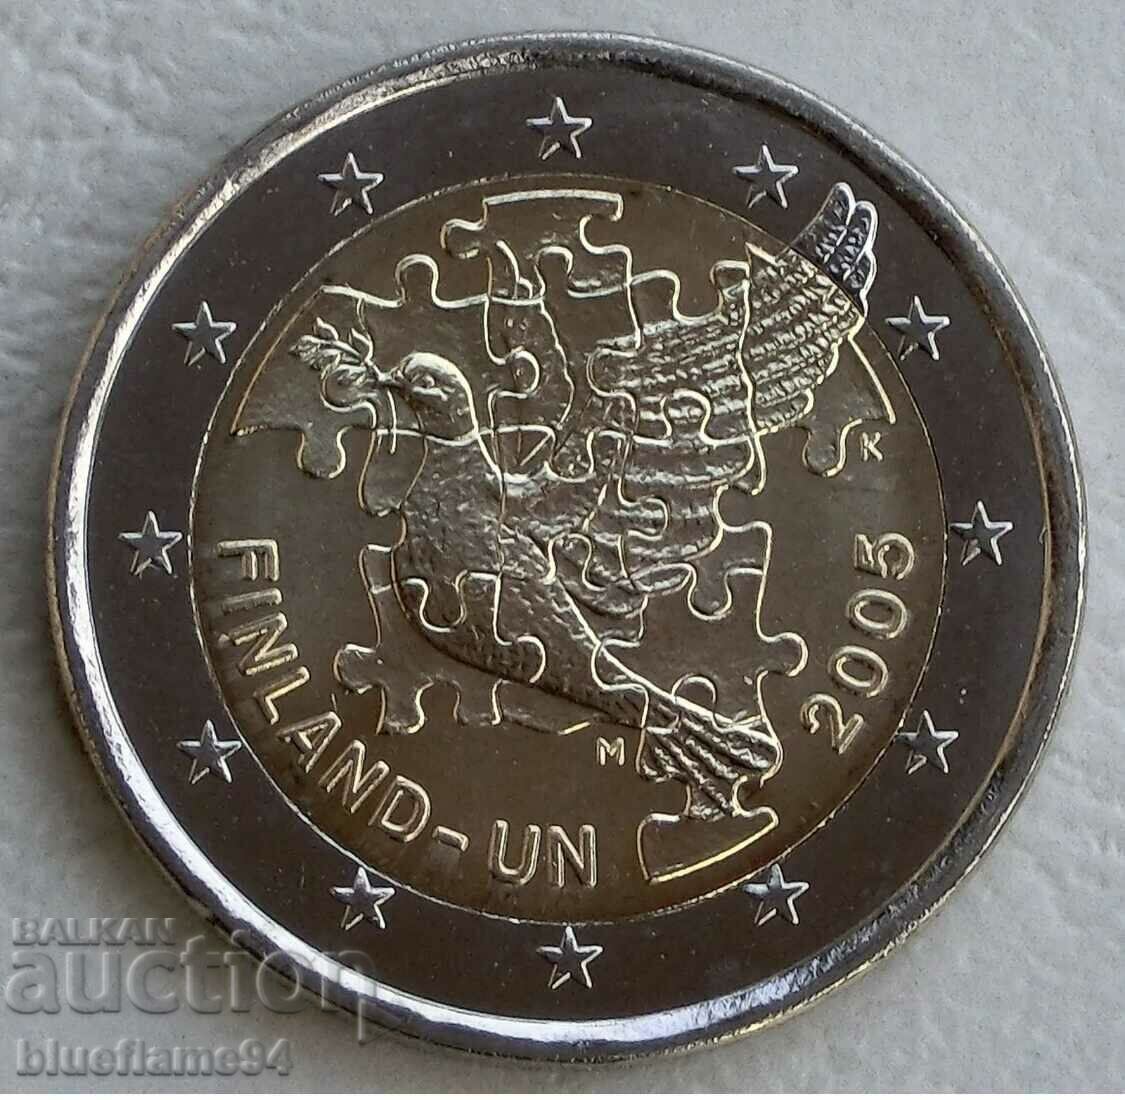 2 euro Finlanda 2005